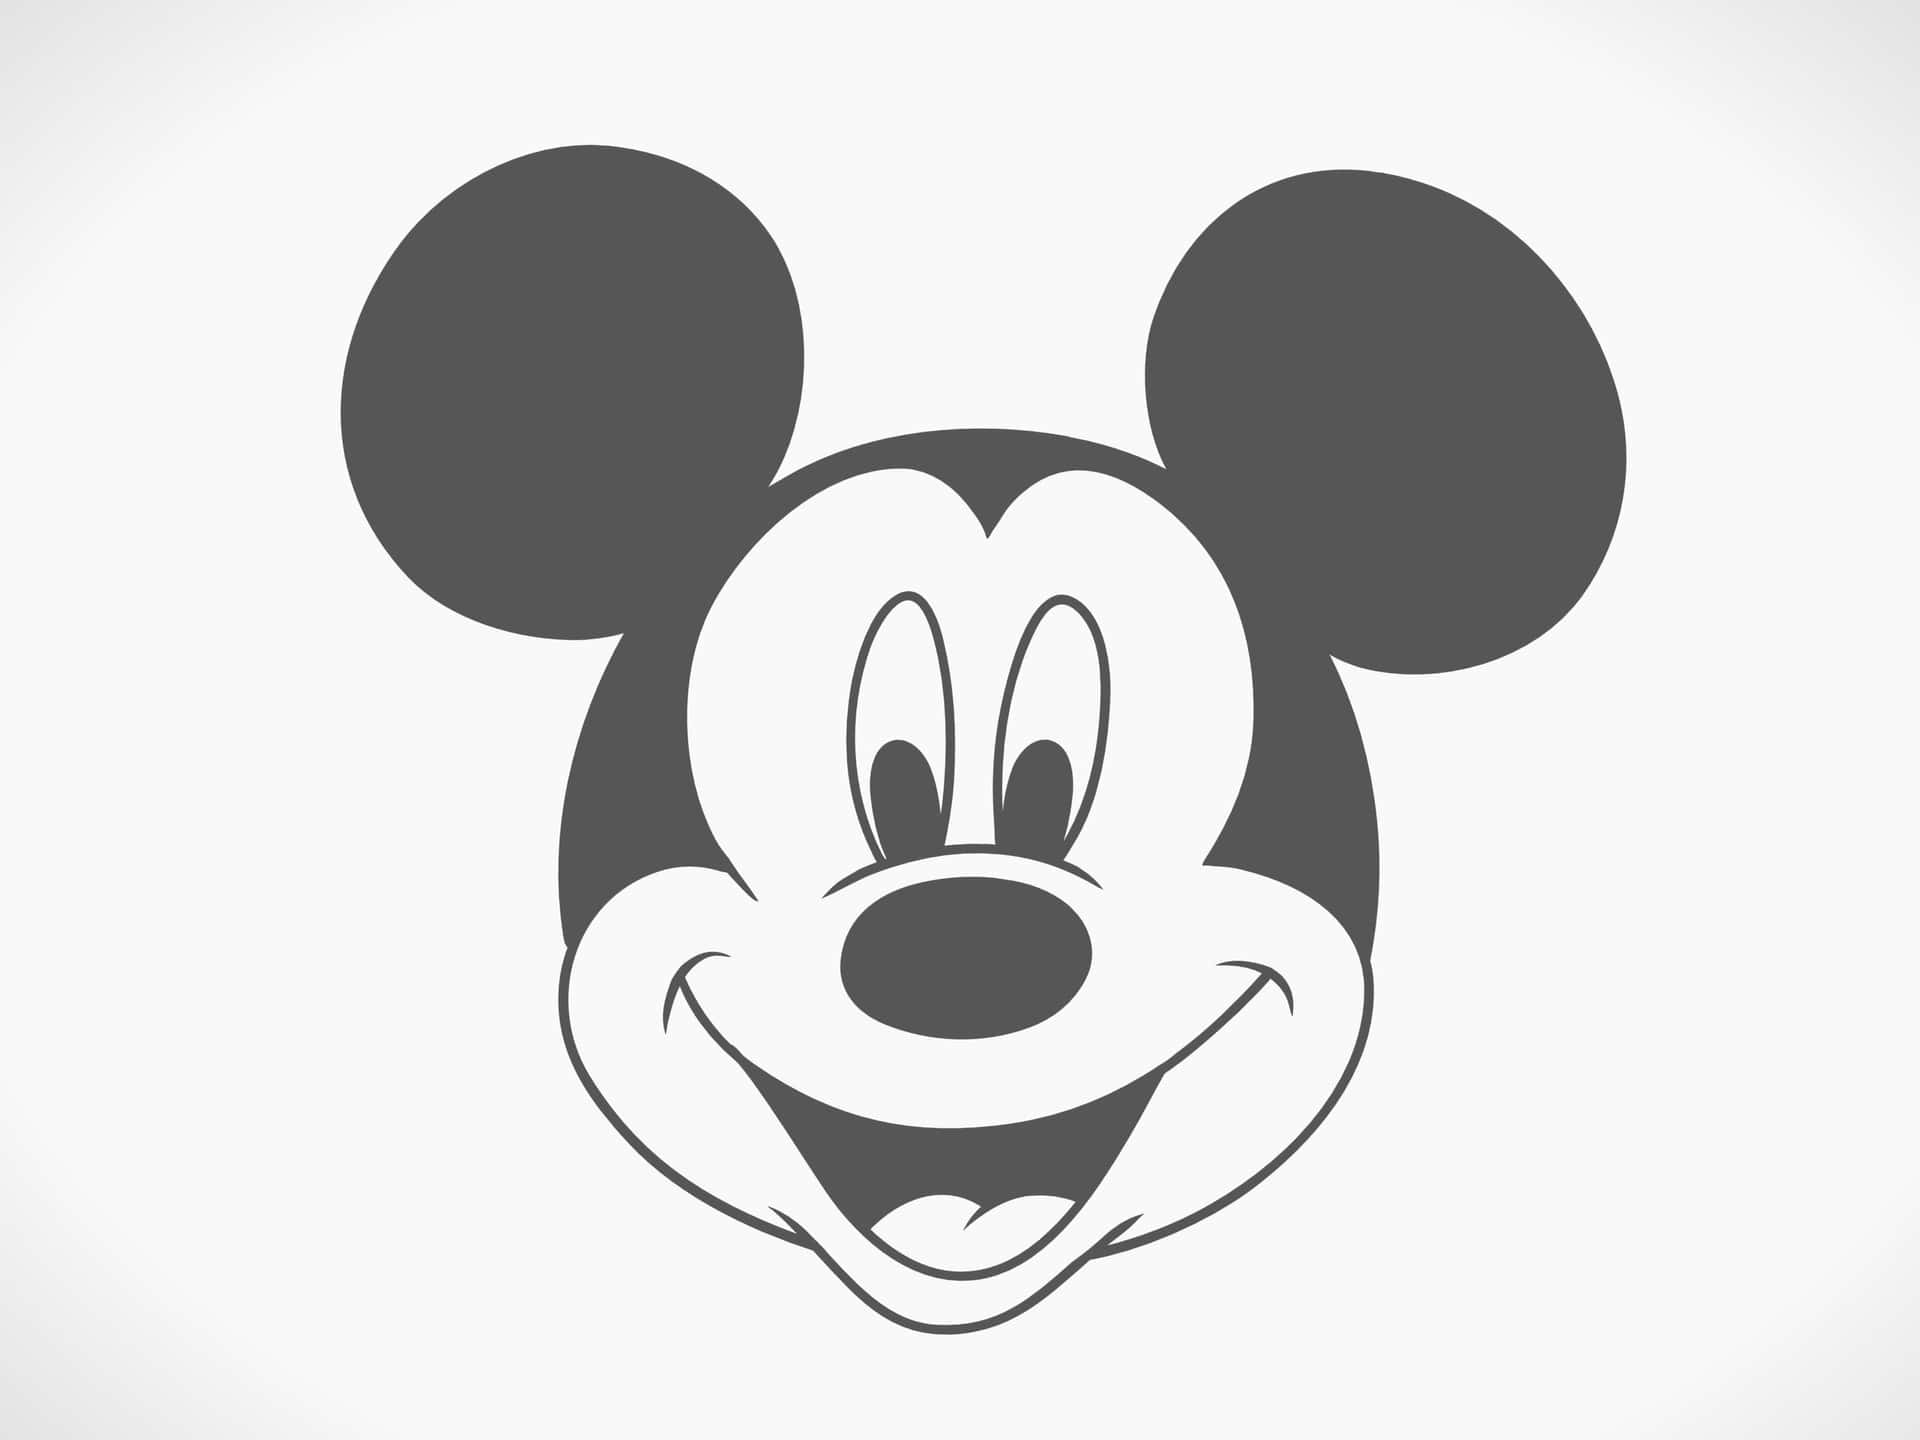 Smilende gamle Mickey Mouse ører i monokrom Wallpaper